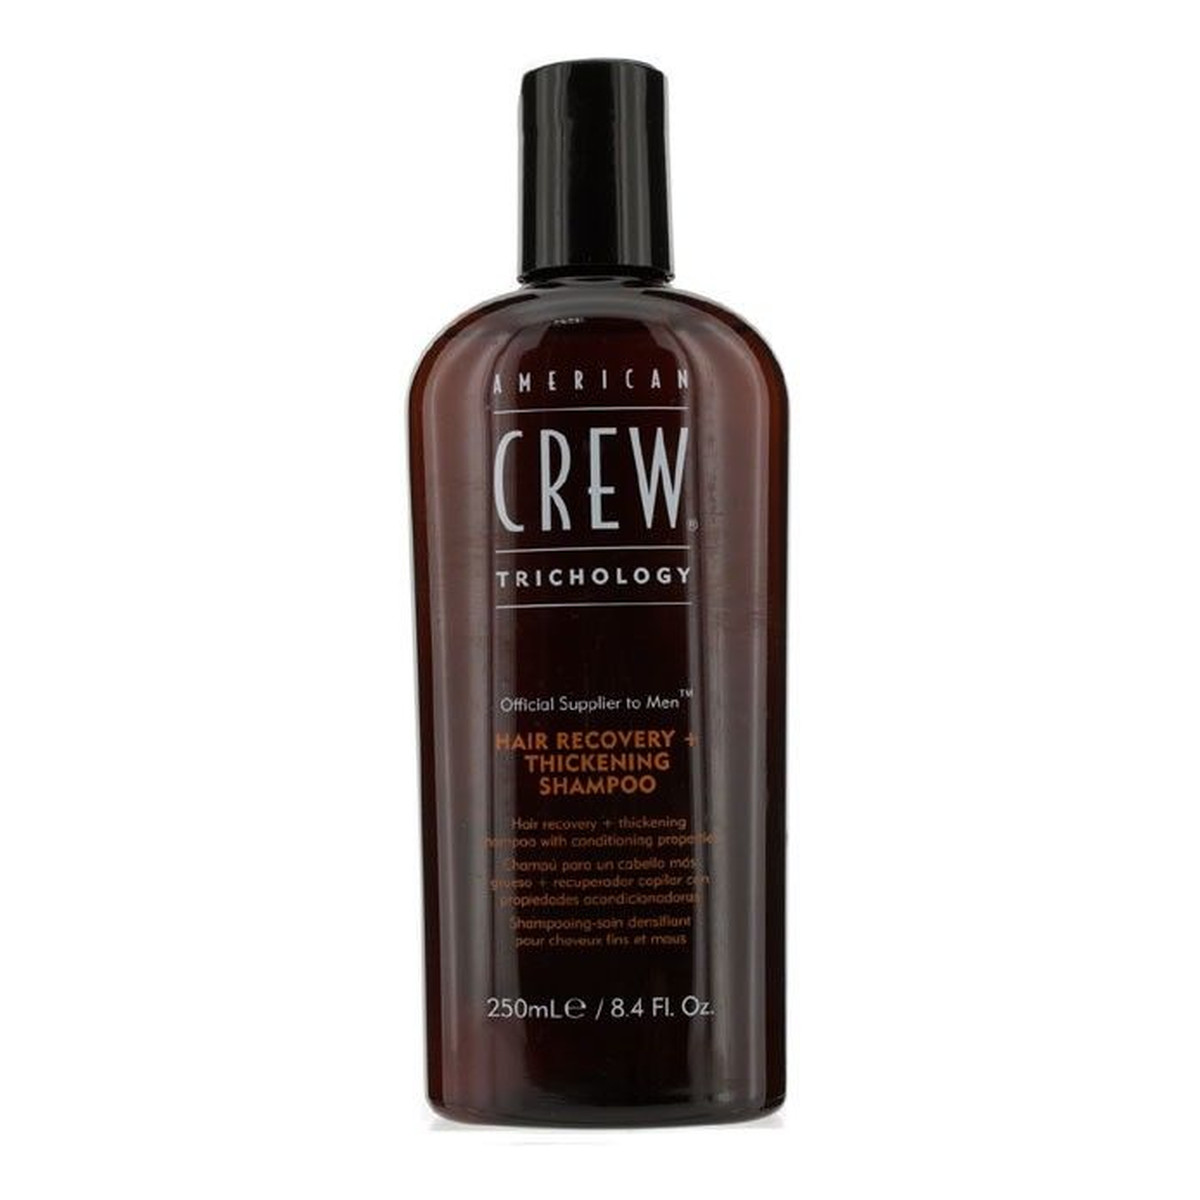 American Crew Trichology Hair Recovery + Thickening Shampoo Szampon przeciw wypadaniu włosów nadający objętość 250ml